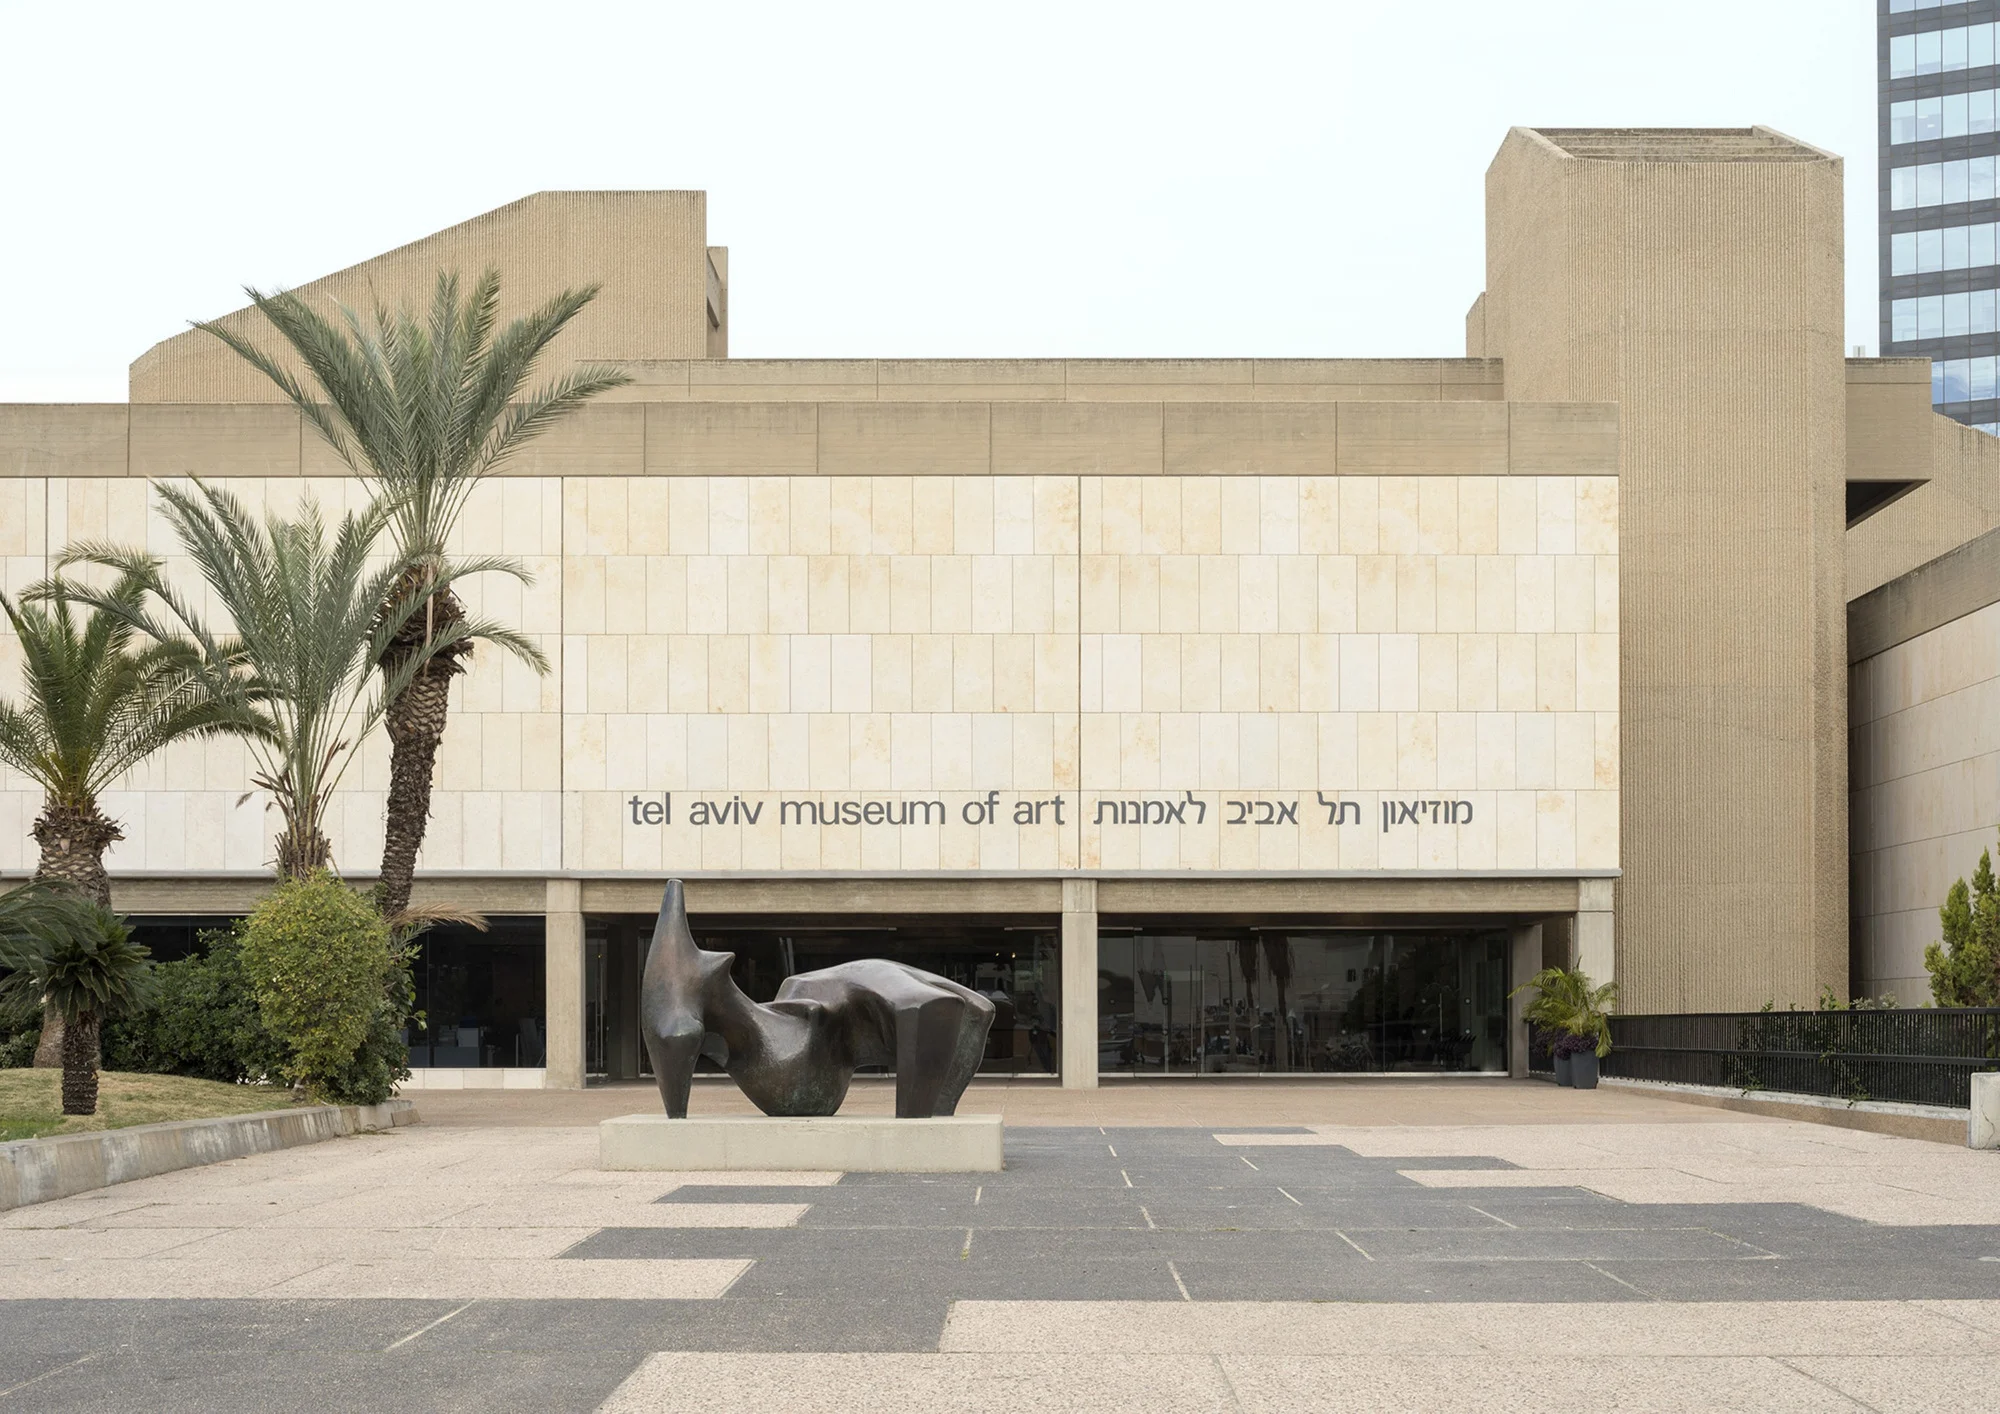 מוזיאון תל אביב לאמנות. צילום: אלעד שריג